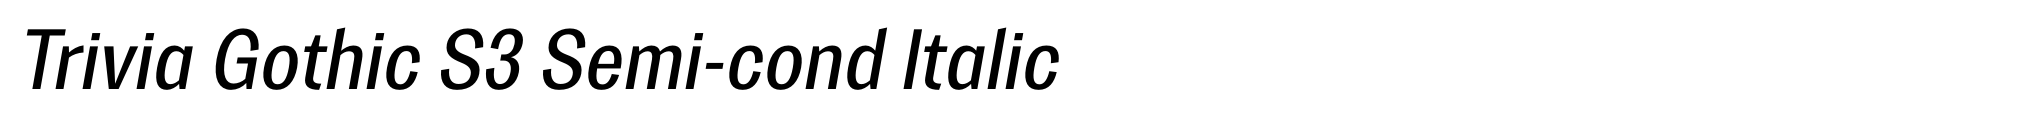 Trivia Gothic S3 Semi-cond Italic image